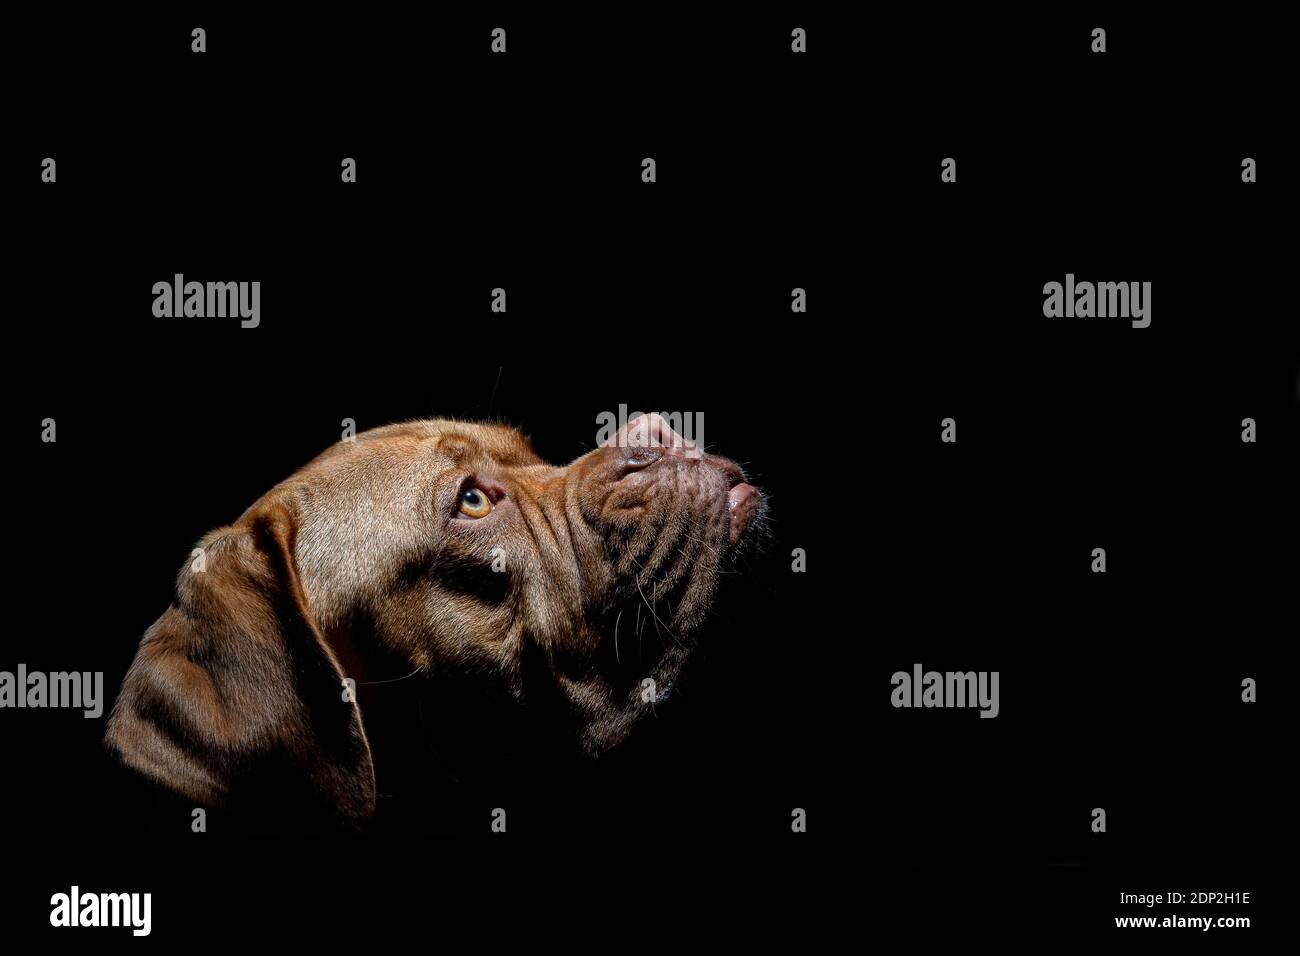 Una foto ritratto di Mabel, un Dogue de Bordeaux (Mastiff francese) di un anno, girato all'esterno in condizioni di scarsa illuminazione con un flash di riempimento della fotocamera. Foto Stock